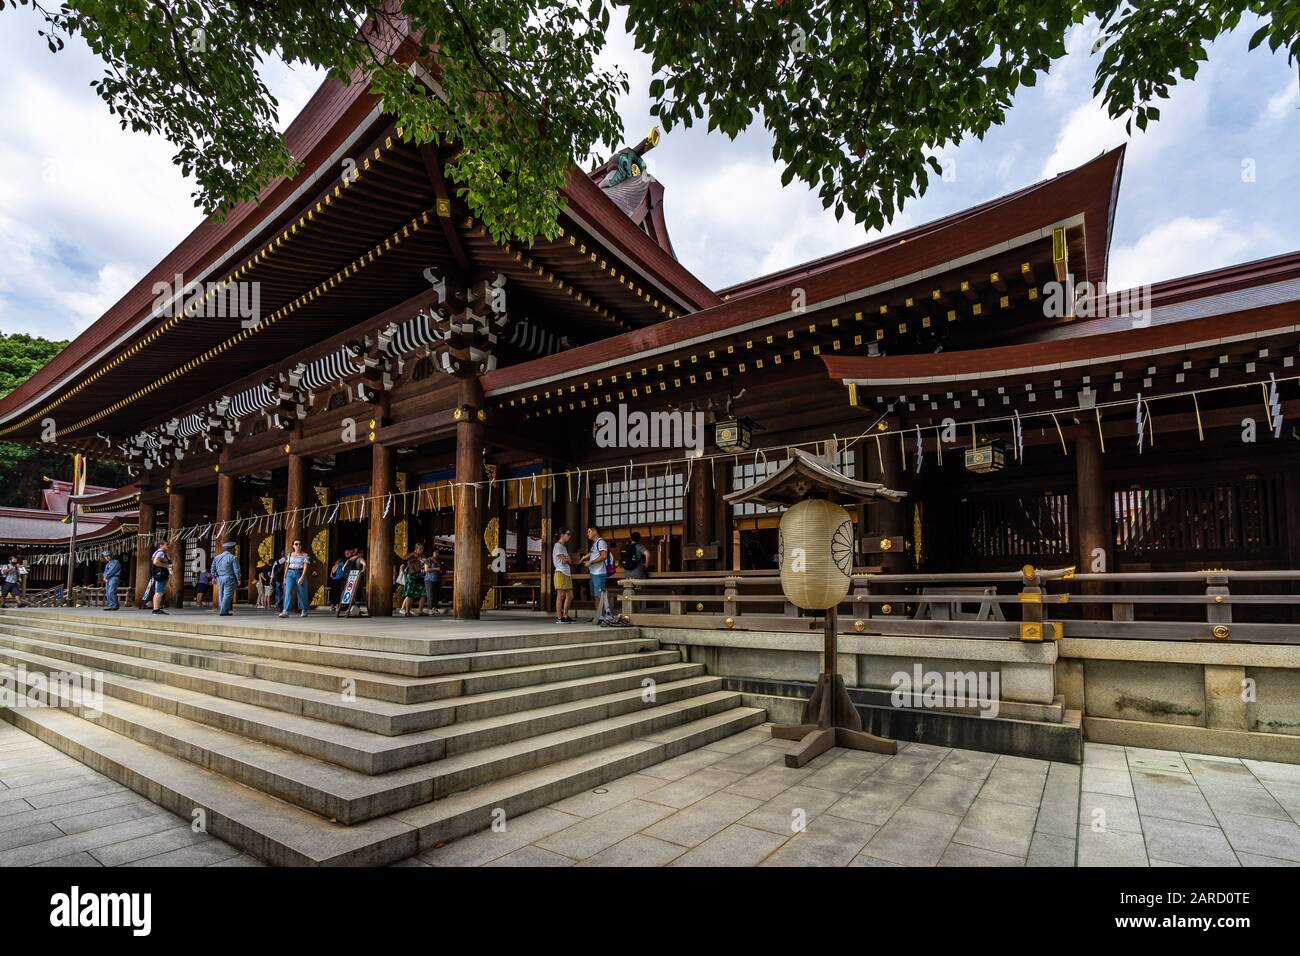 Extérieur du complexe de sanctuaire Meiji Jingu, sur le sanctuaire Shinto le plus visité de Tokyo. Tokyo, Japon, Août 2019 Banque D'Images